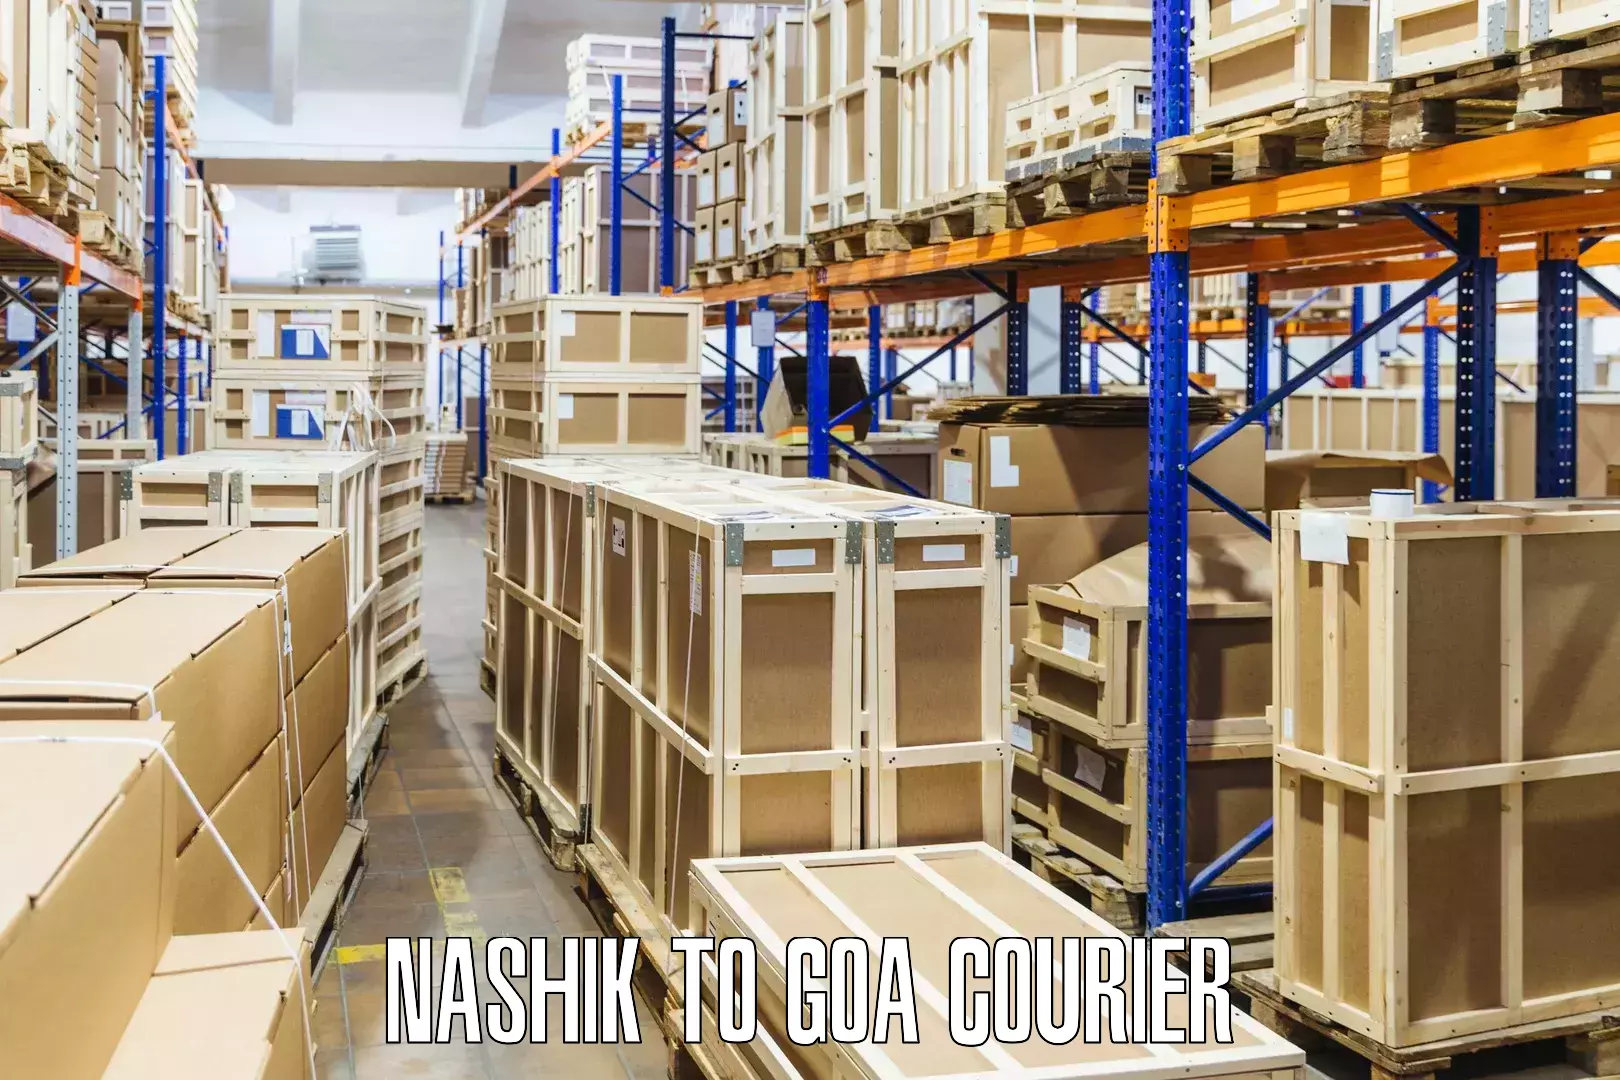 End-to-end delivery Nashik to Goa